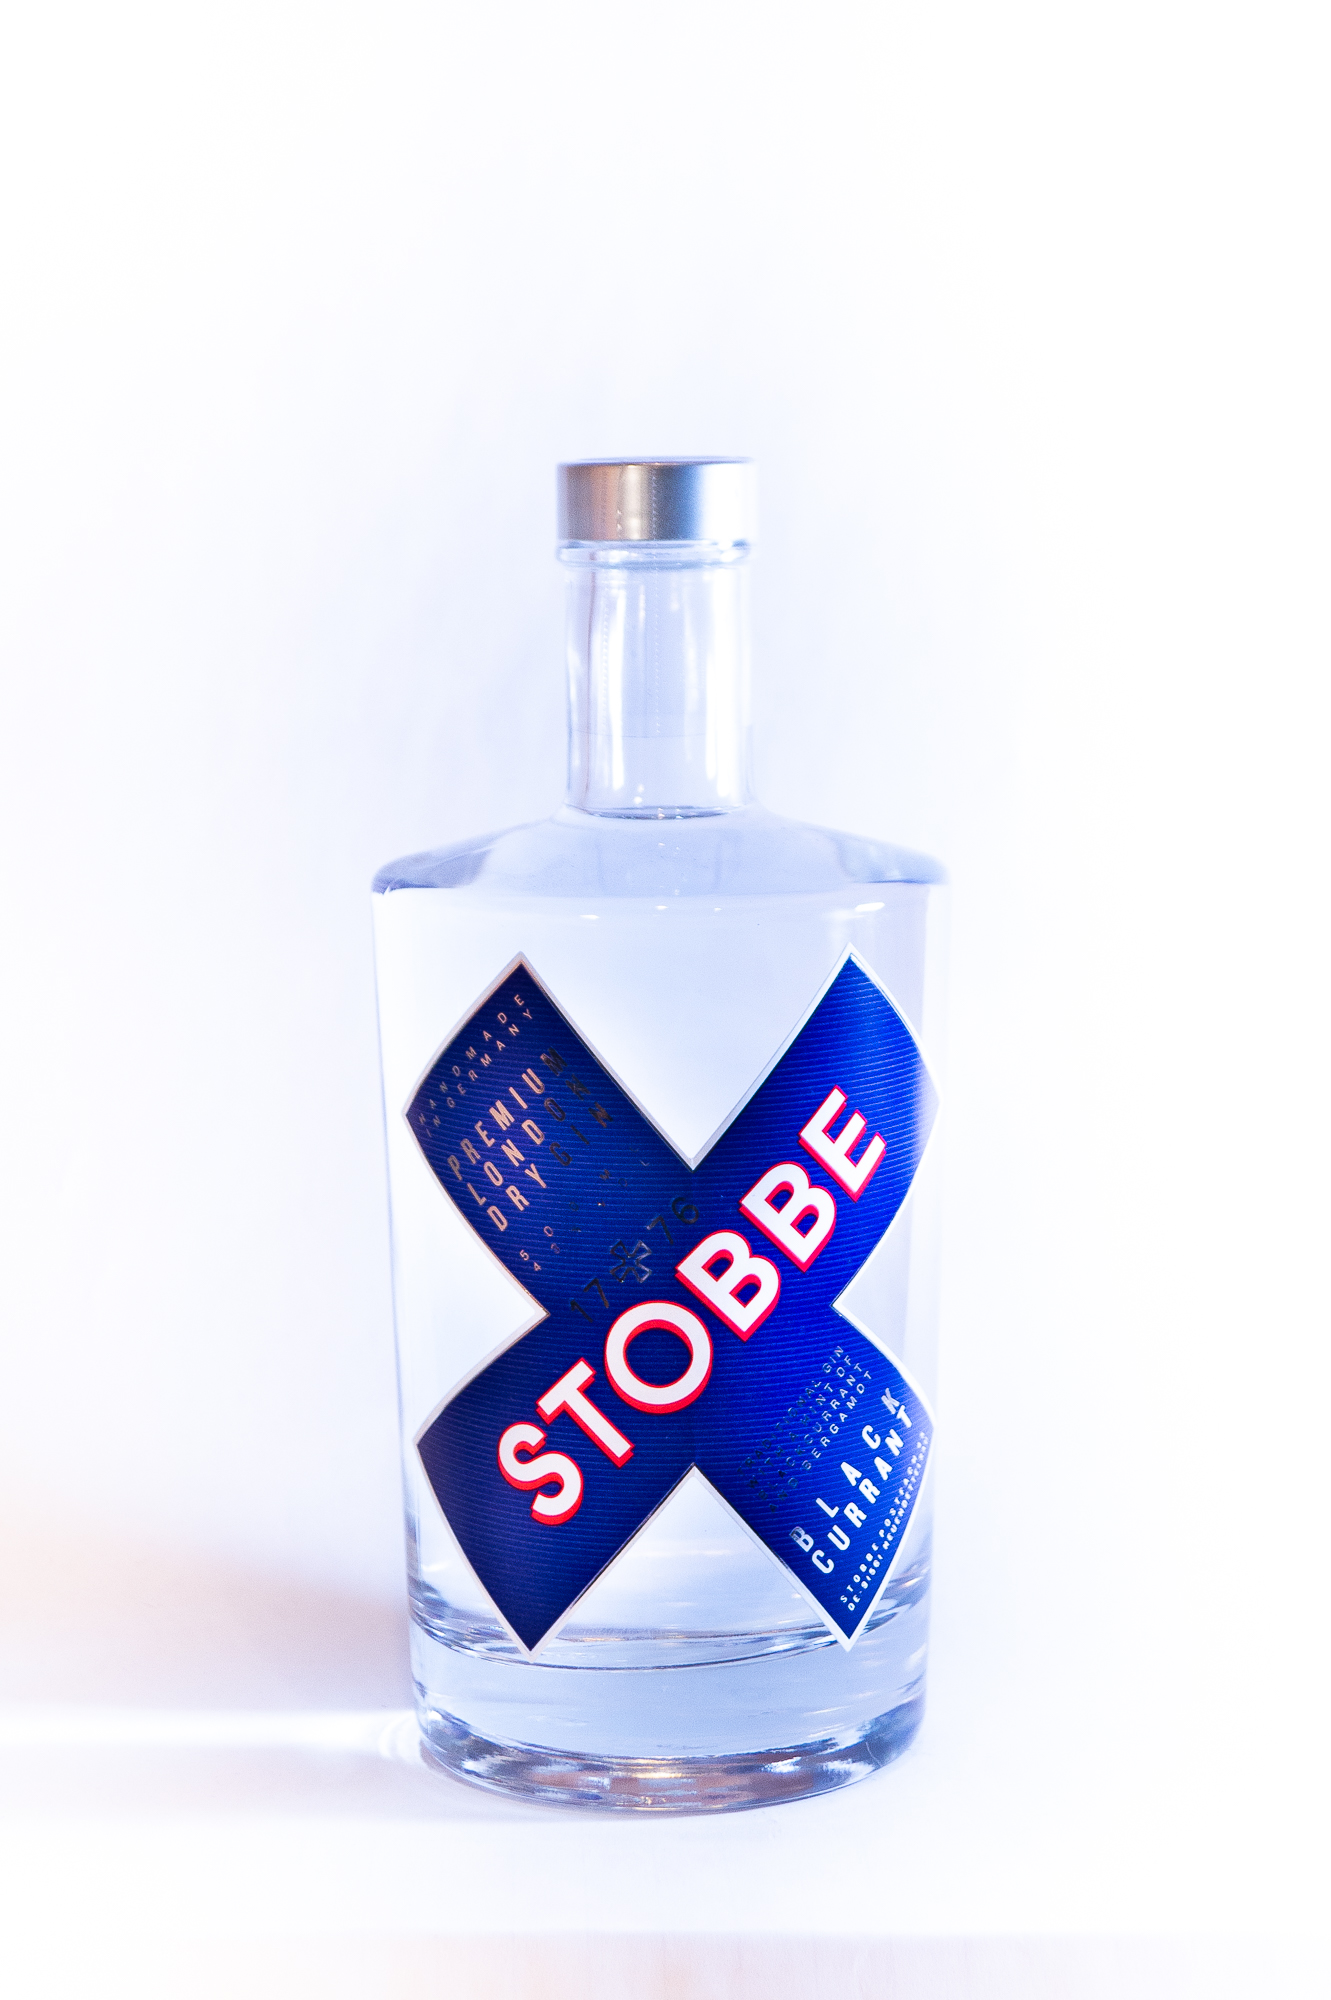 Stobbe Blackcurrant Gin 